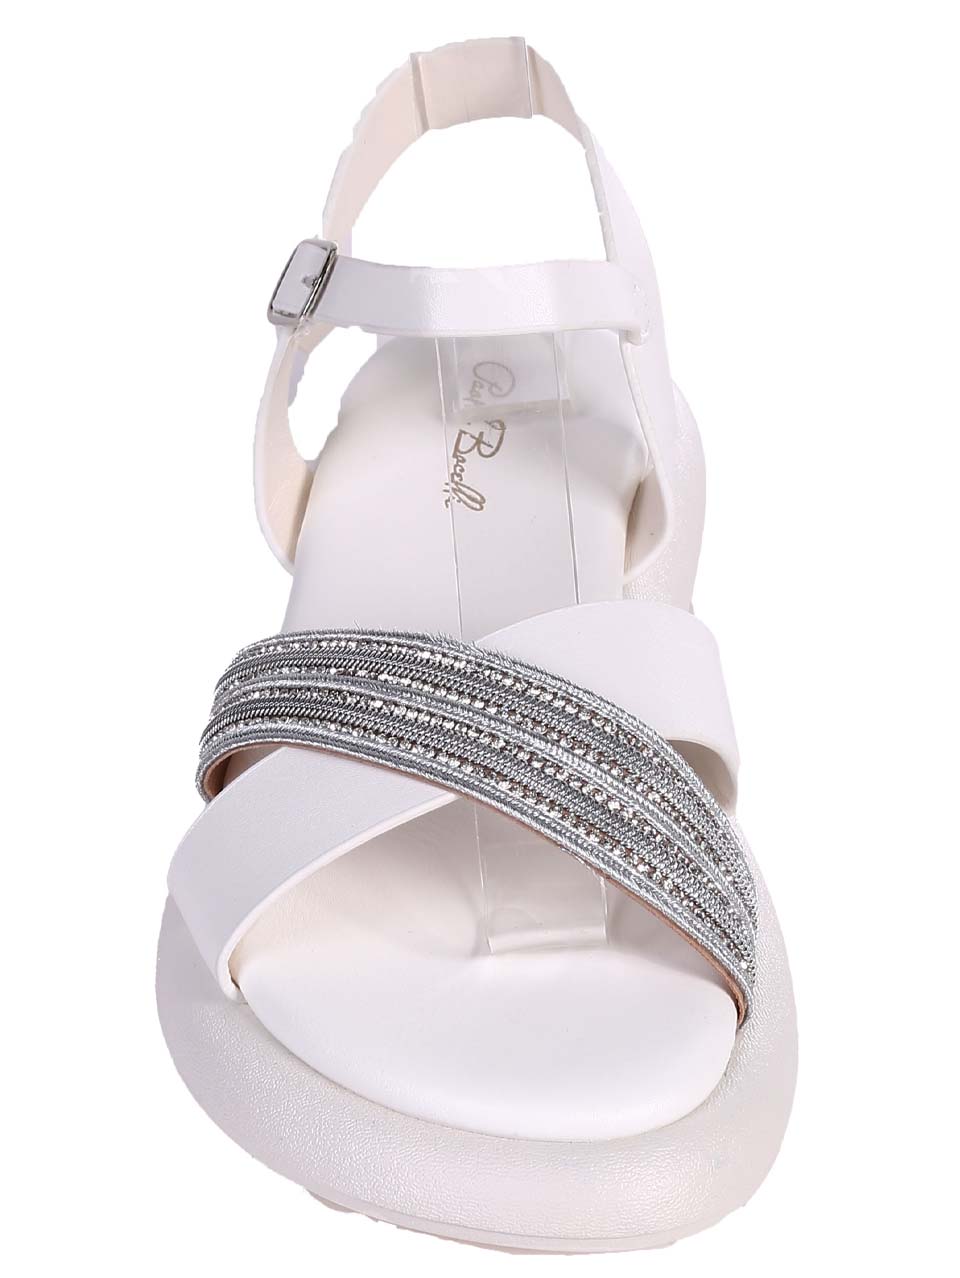 Ежедневни дамски сандали в бяло 4H-24245 white